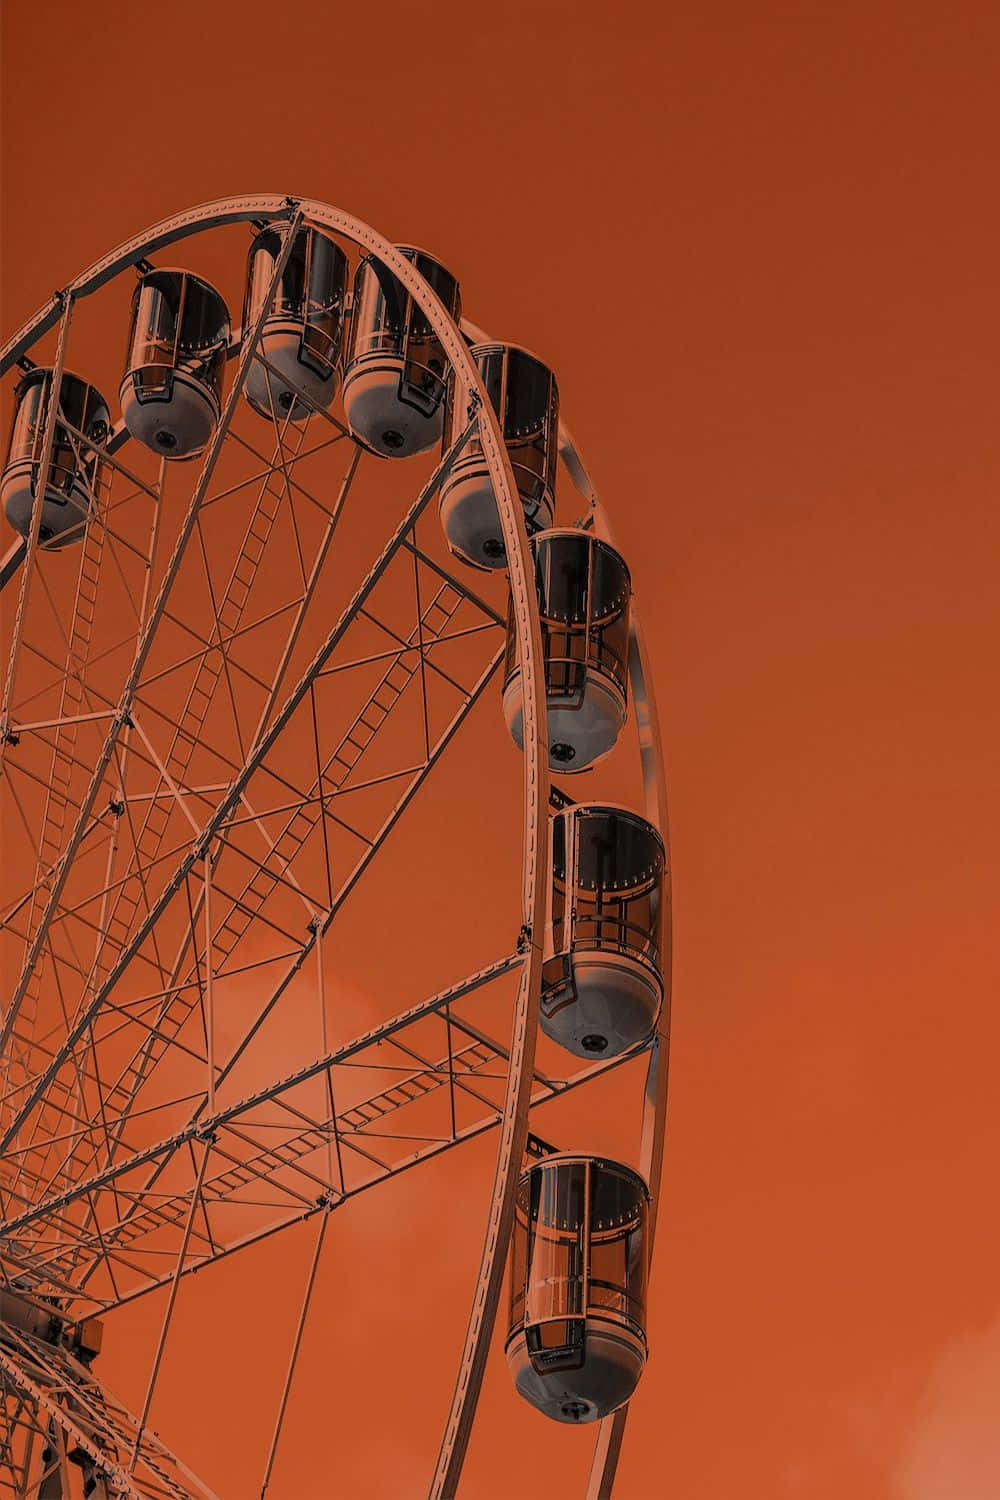 Vintage Orange Ferris Wheel Aesthetic.jpg Wallpaper